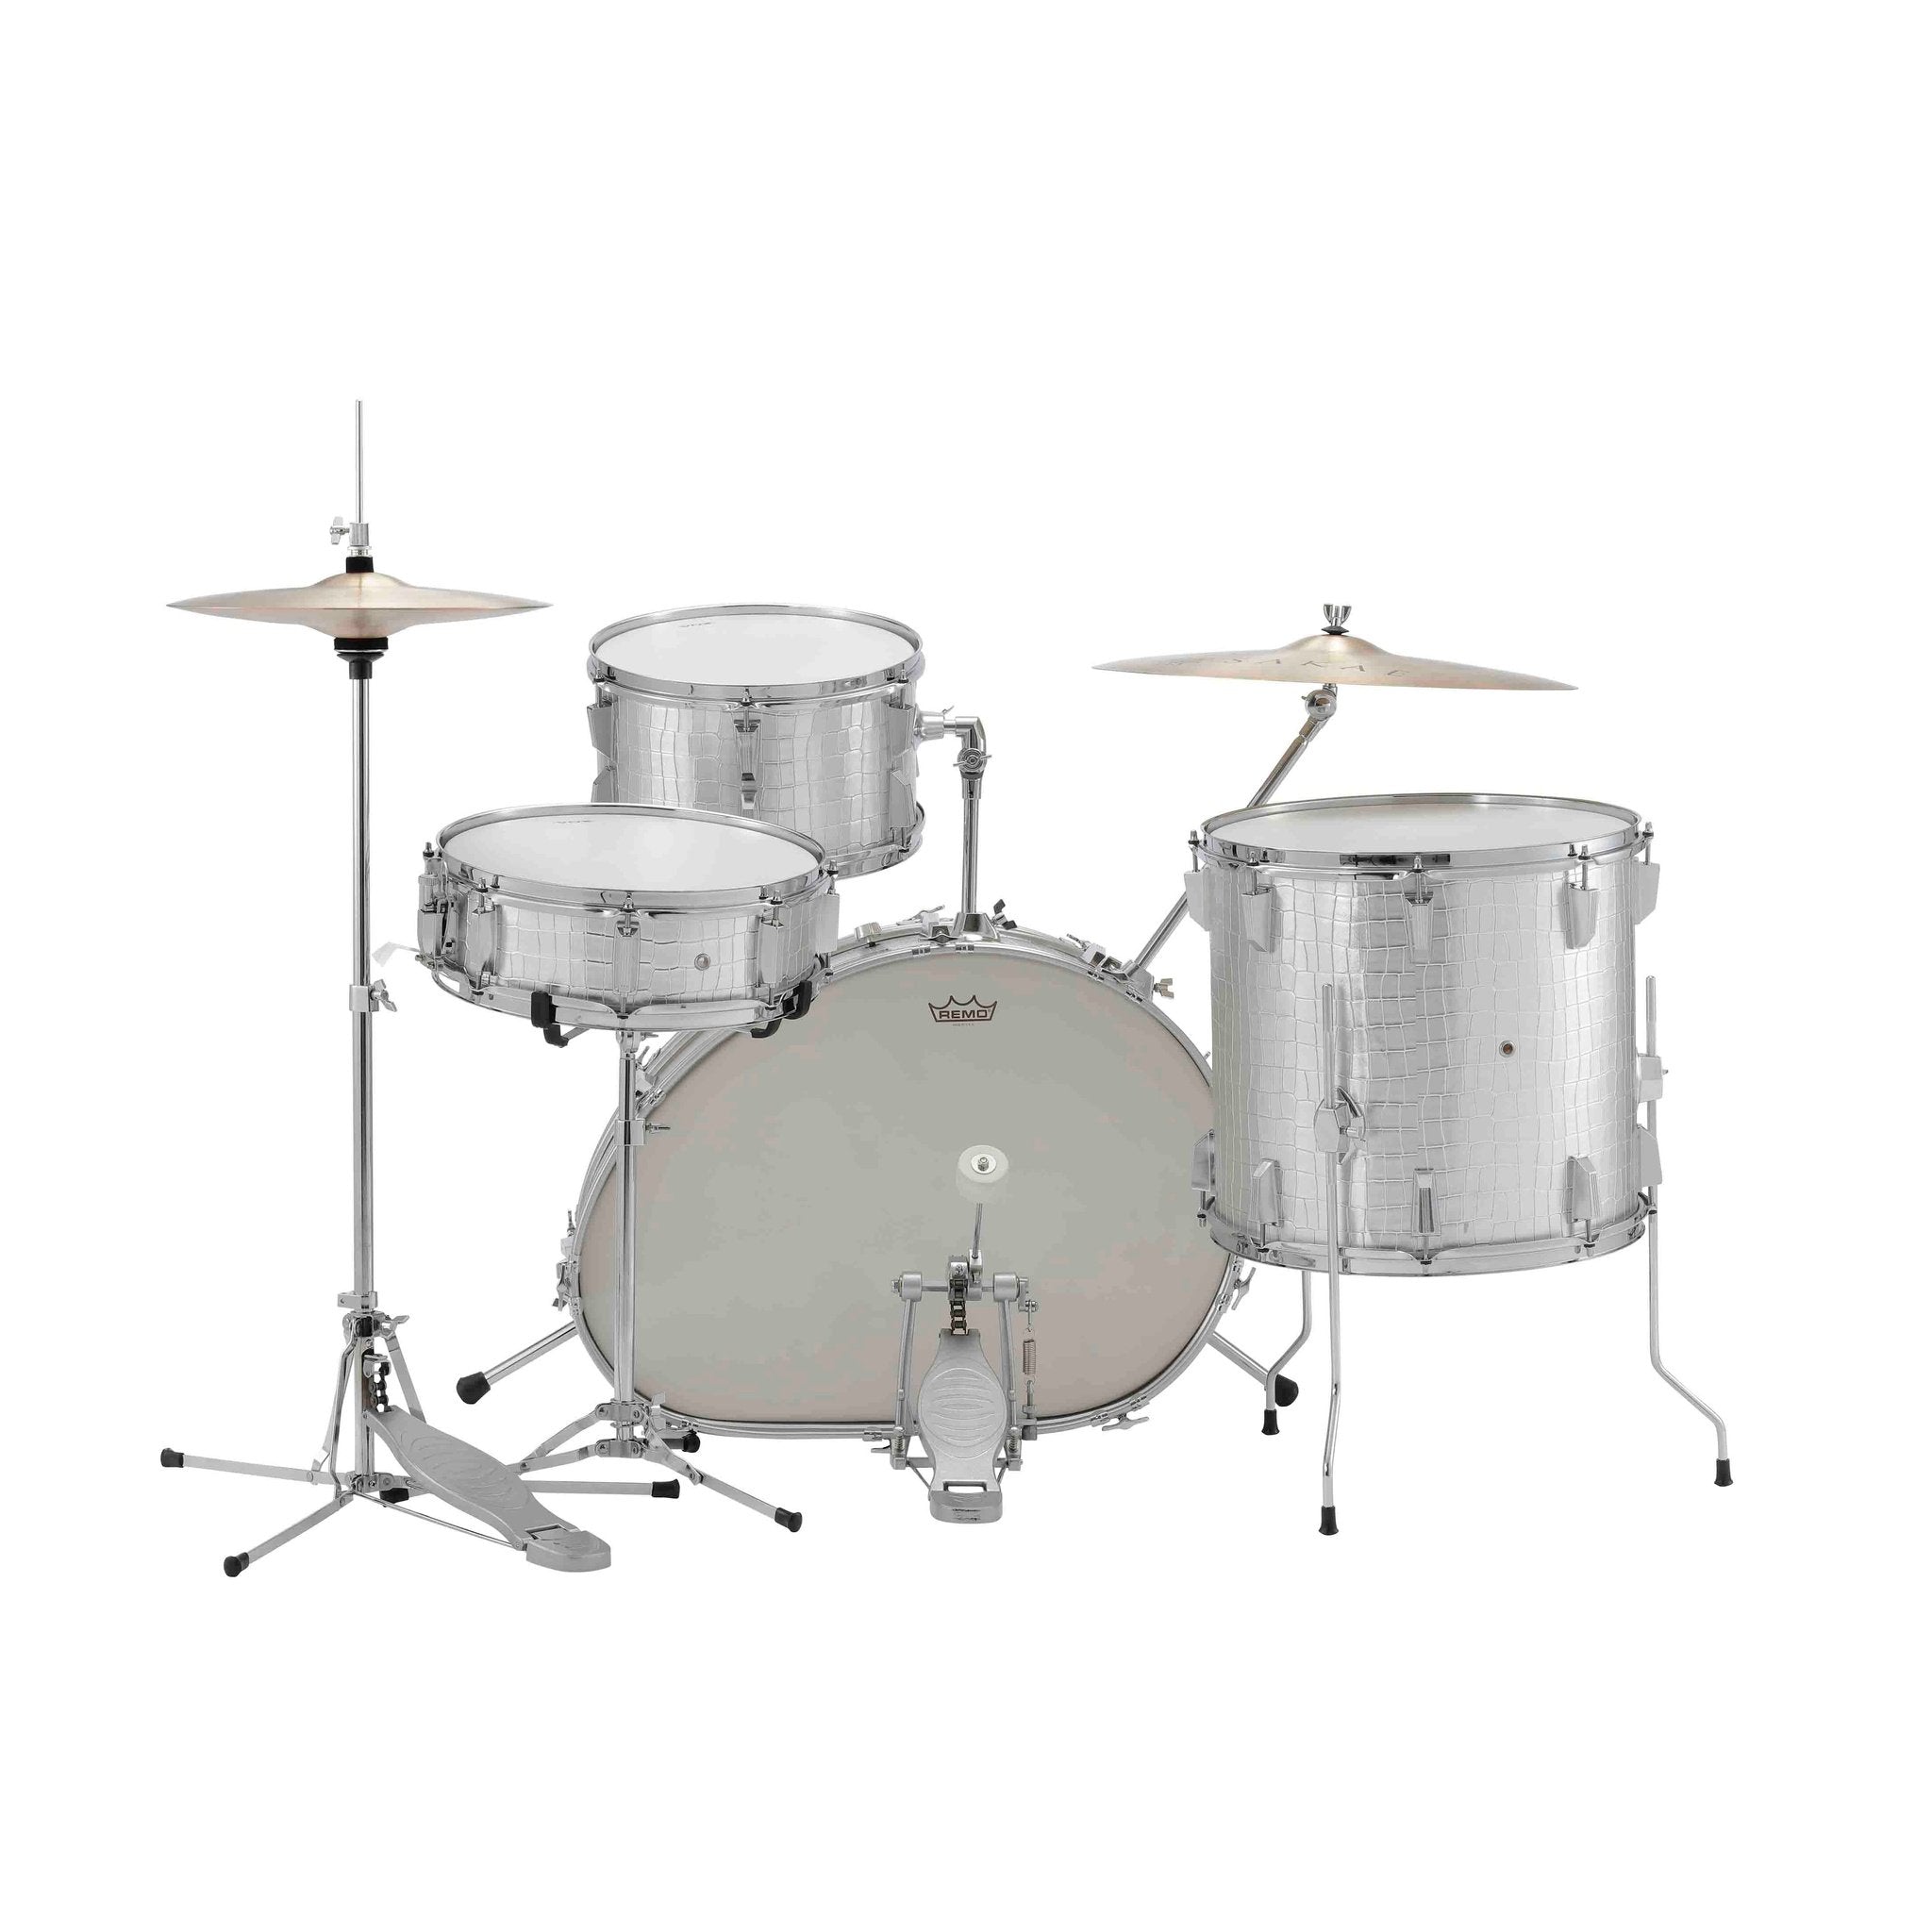 Vox Telstar Drum Kit 4